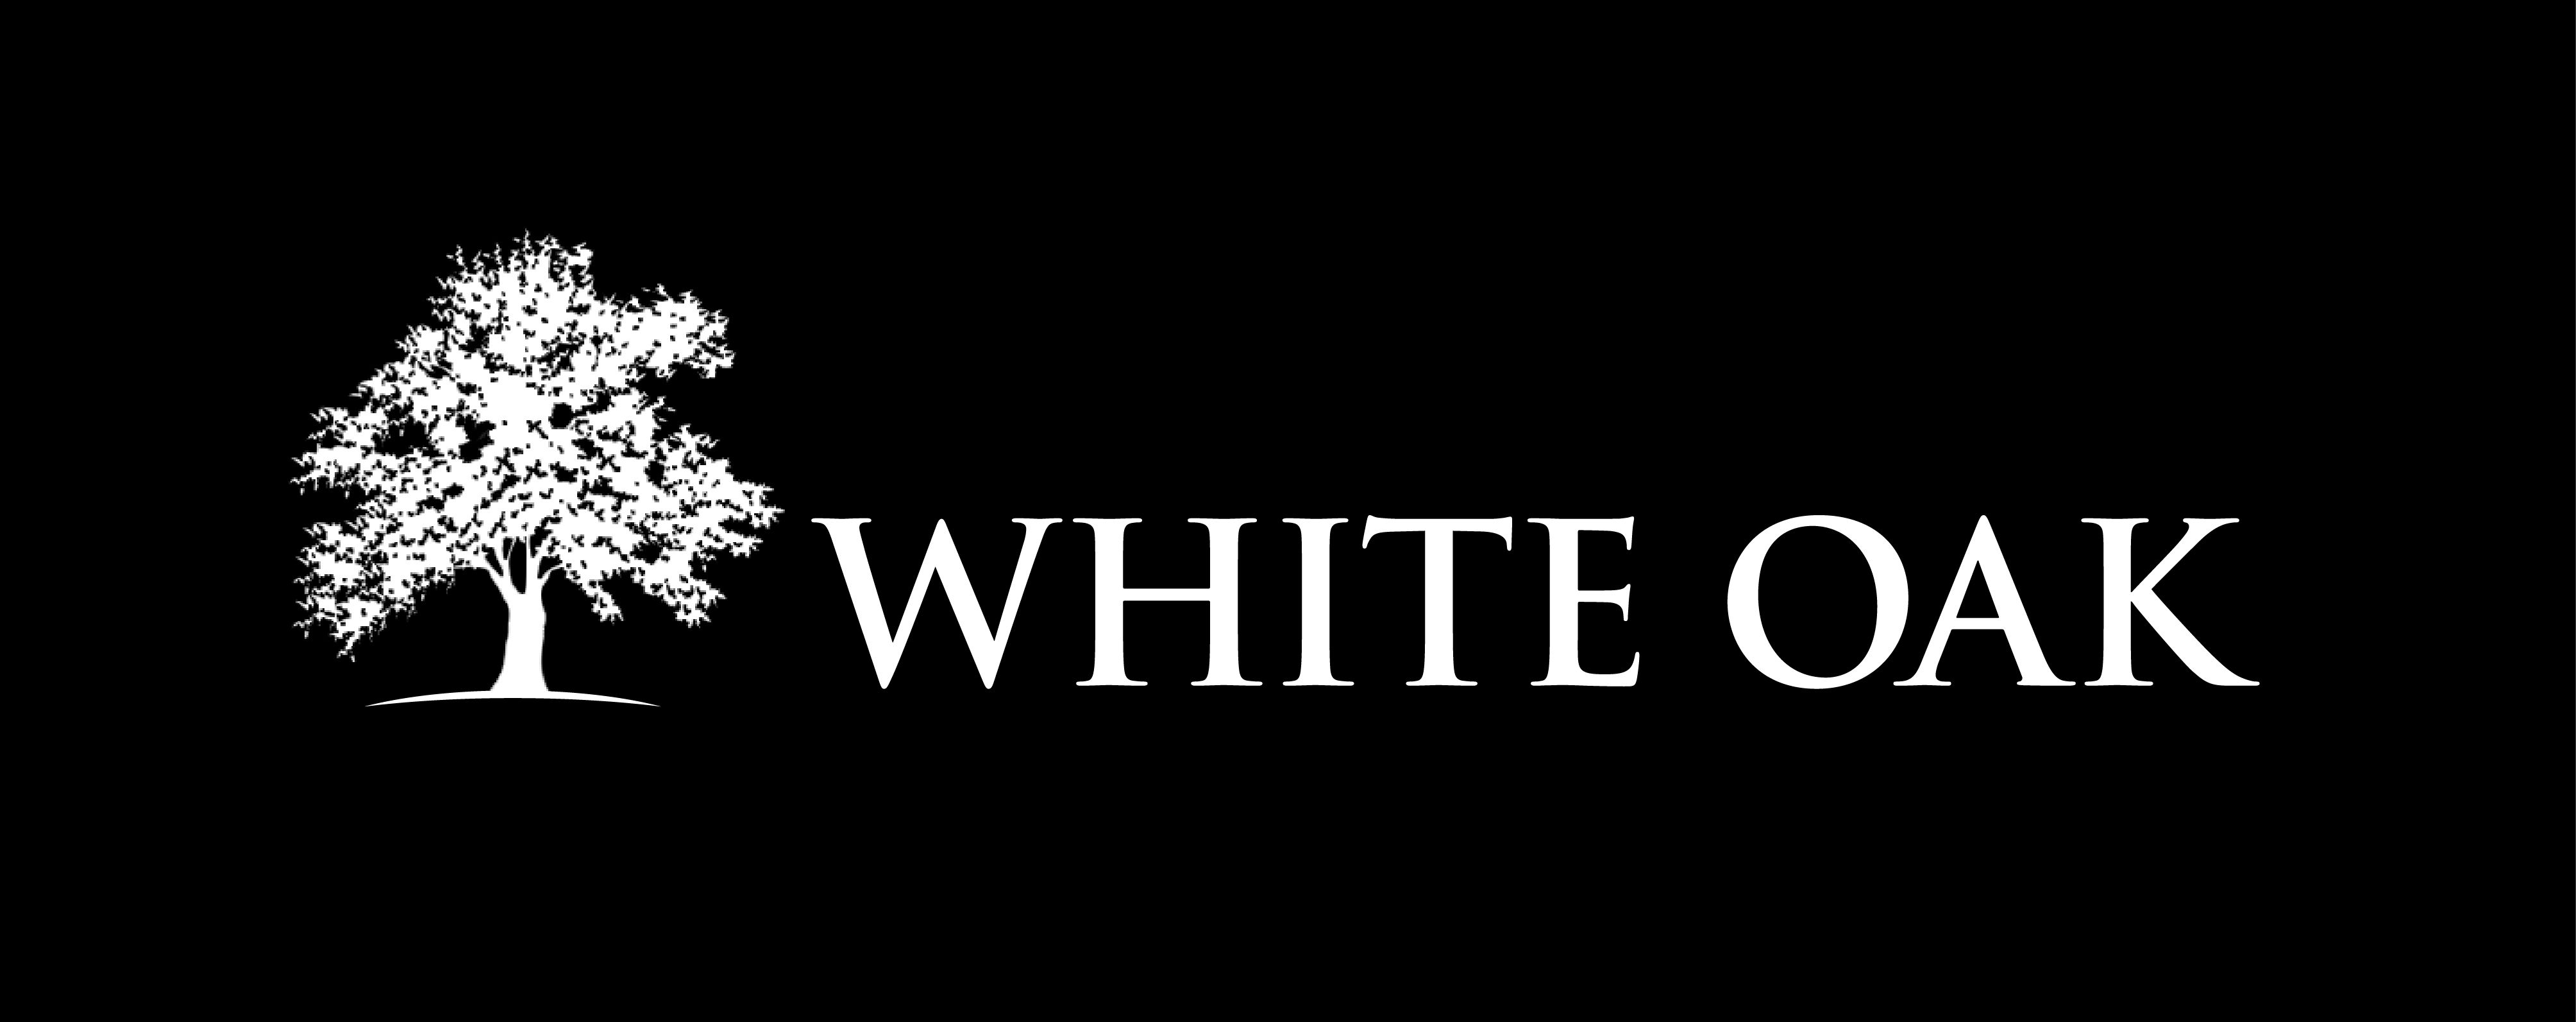 White Oak Partners w